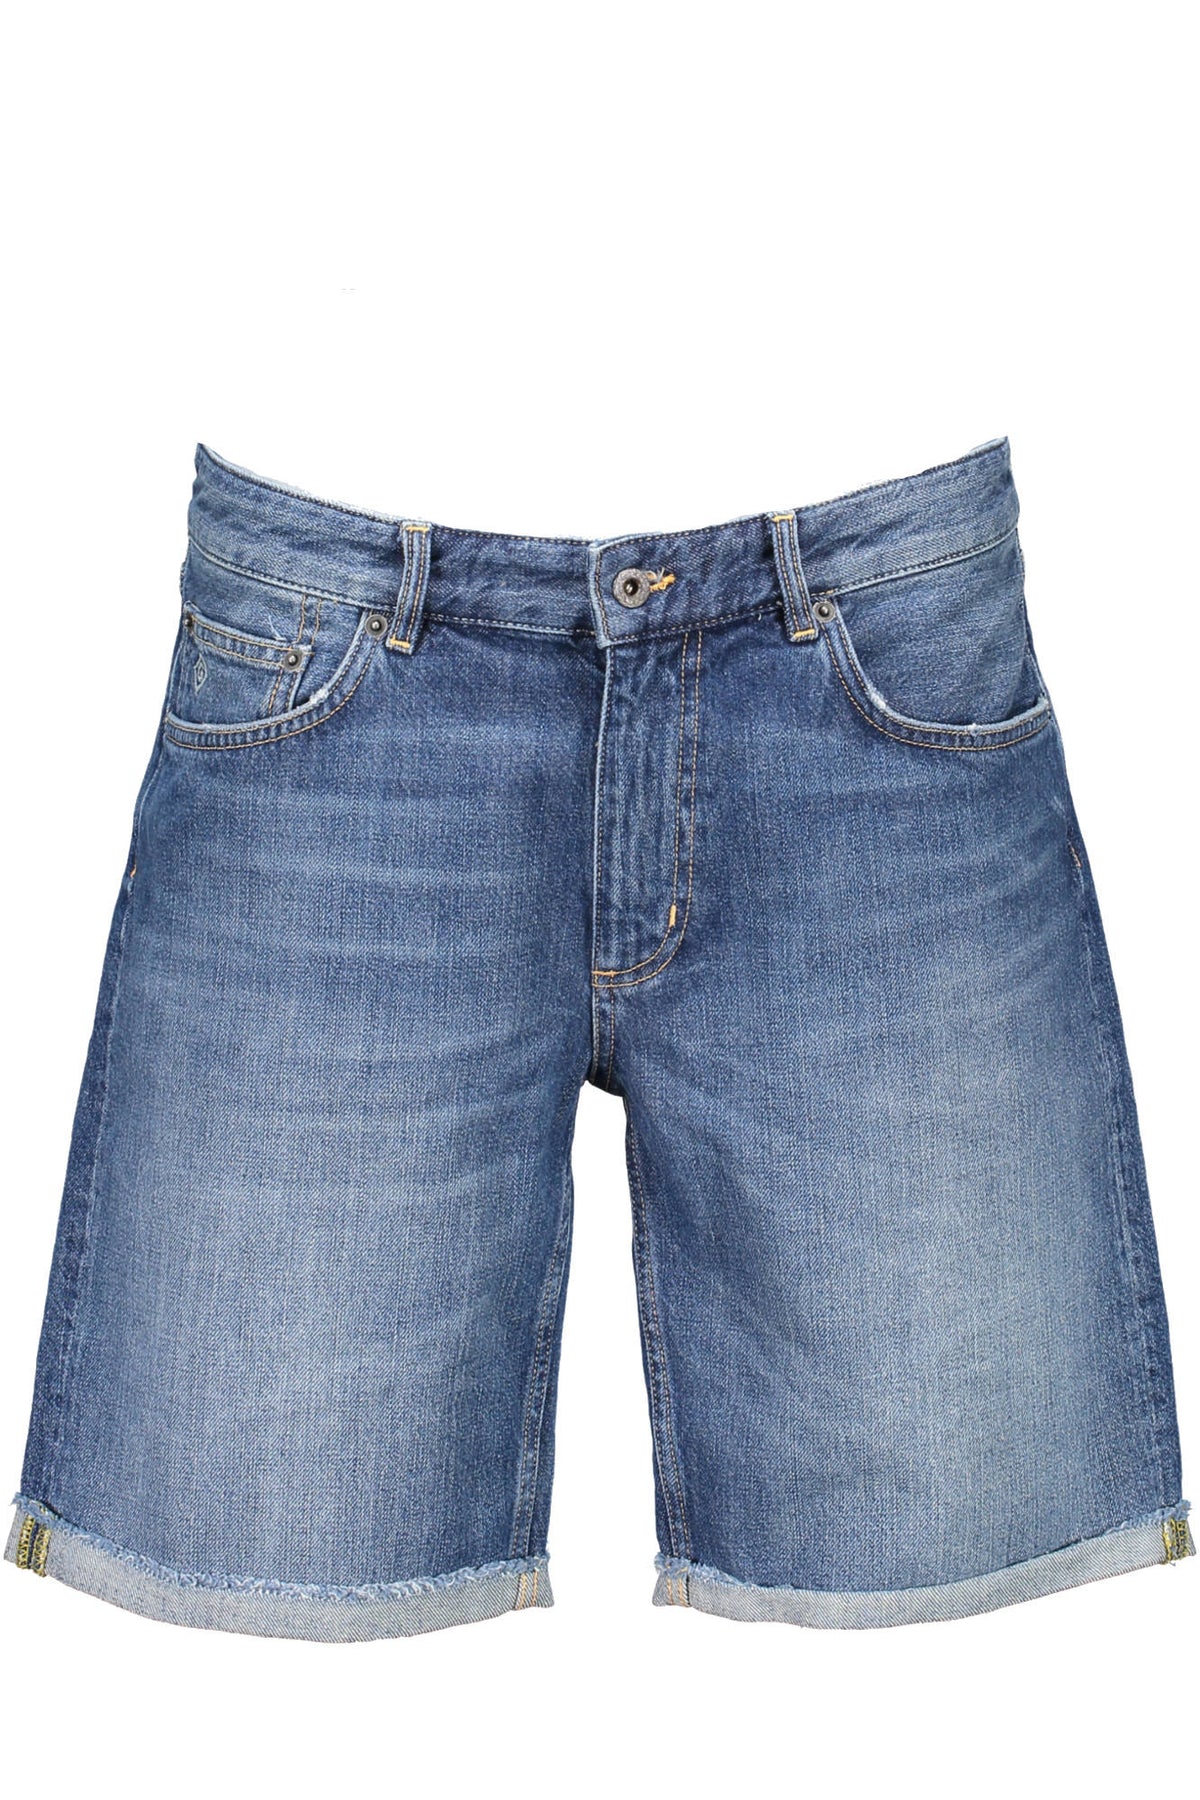 GANT Herren Shorts Bermuda Jeansshorts kurze Hose